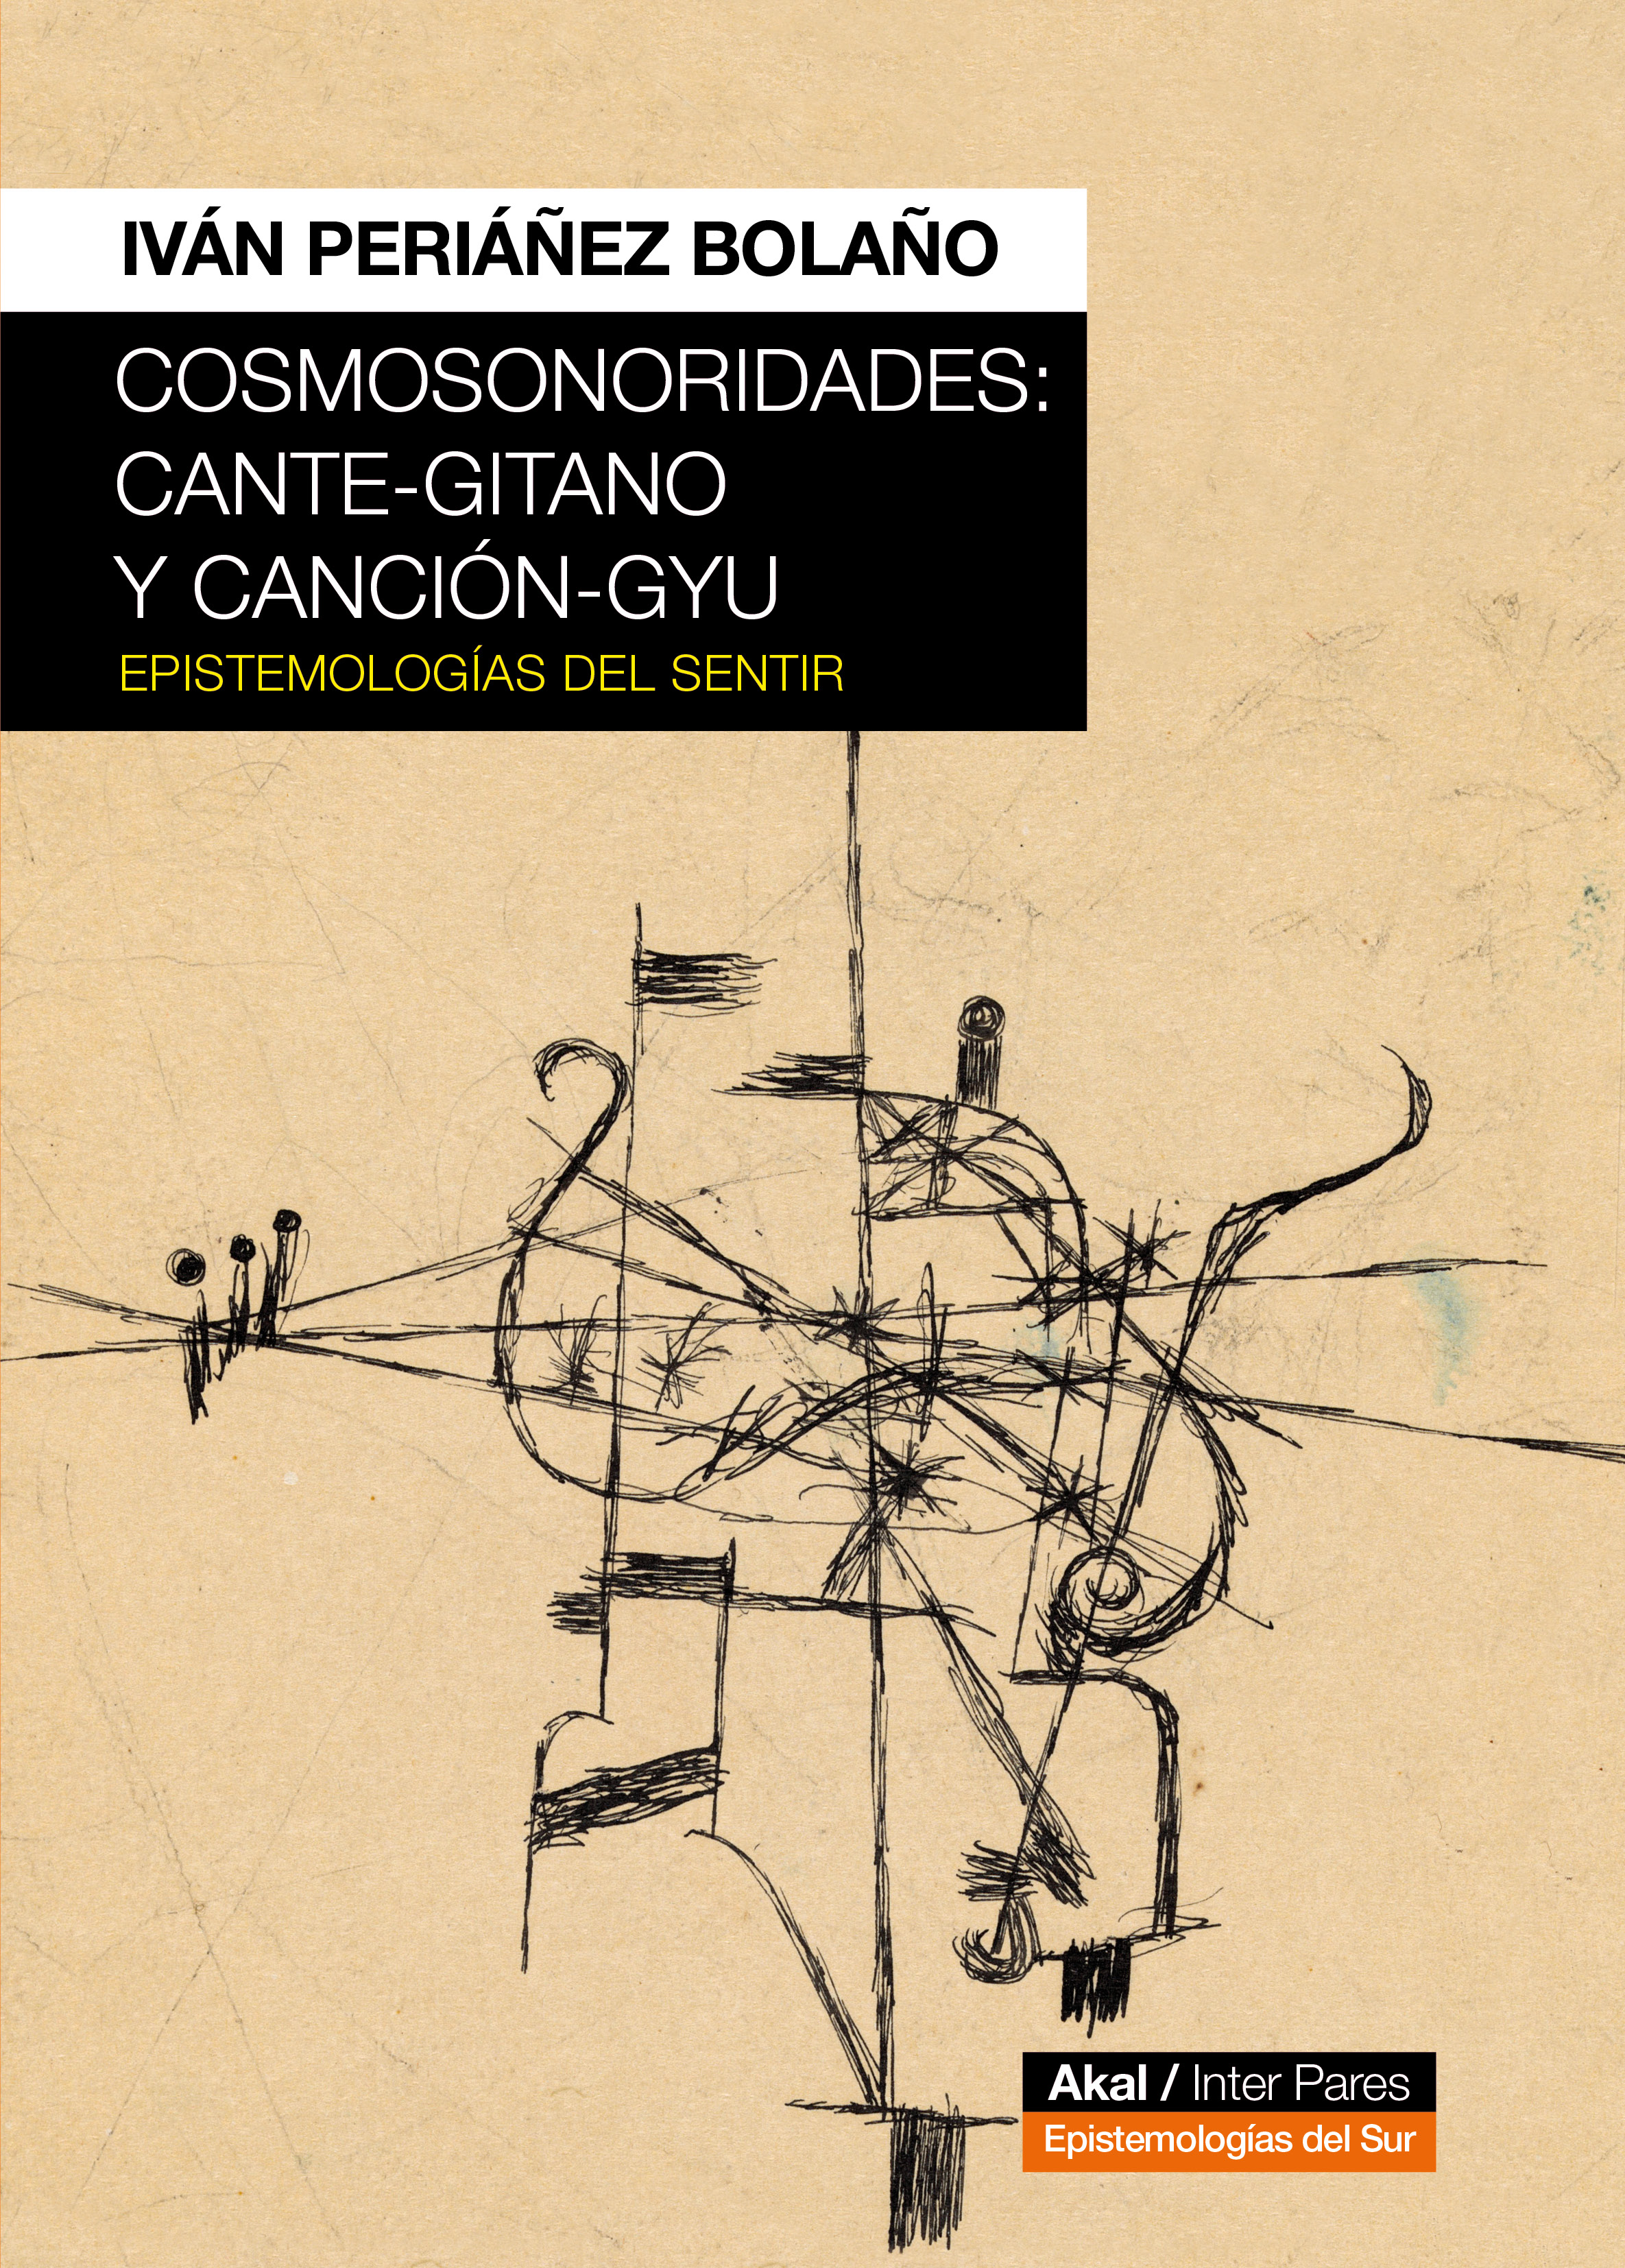 COSMOSONORIDADES: CANTE-GITANO Y CANCIÓN GYU - Ivan Periañez Bolaño